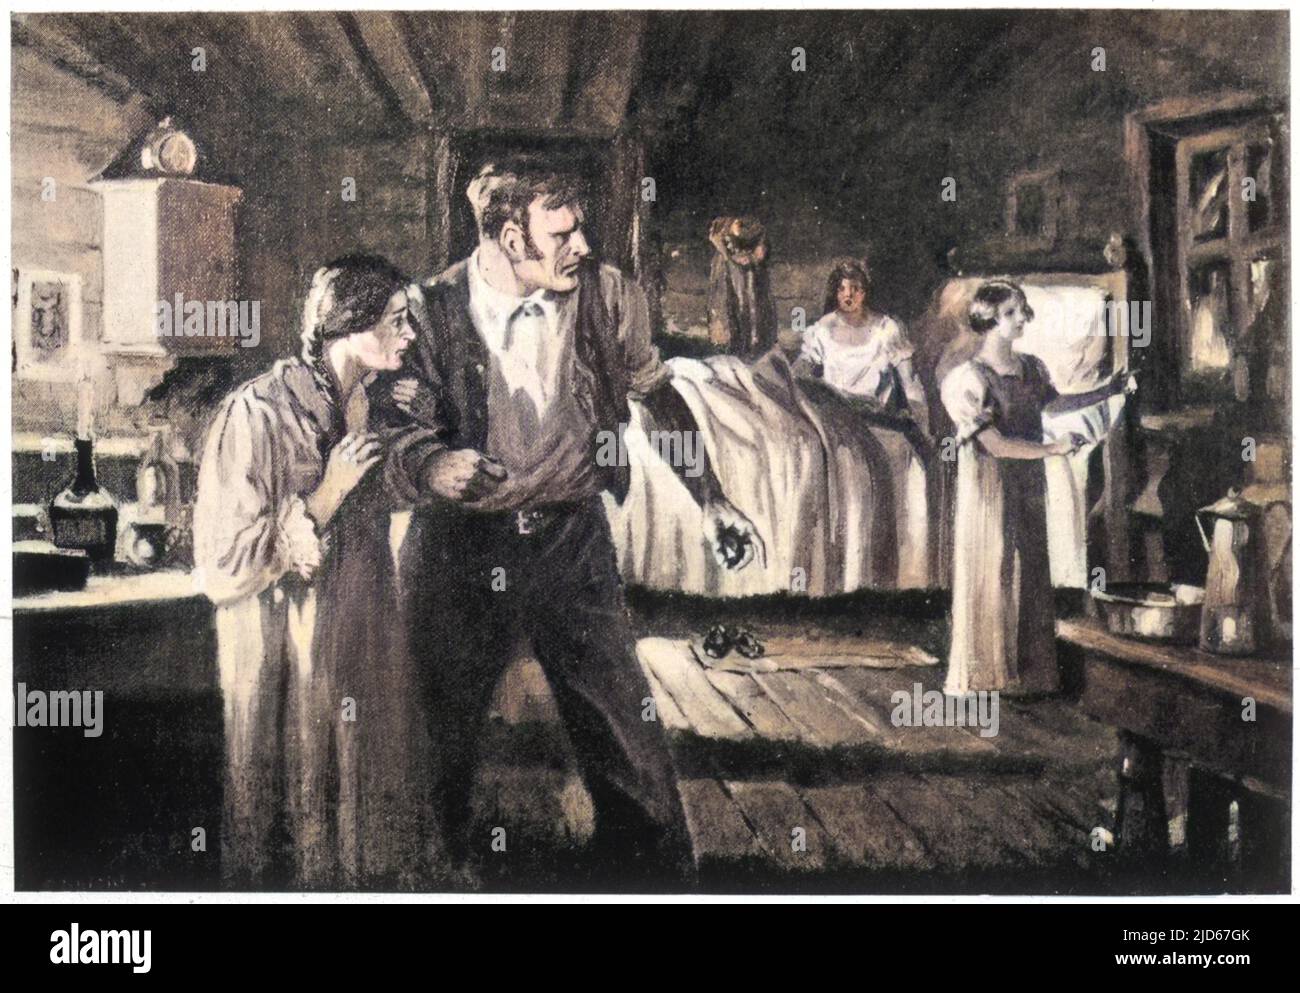 Die Familie Fox reagiert auf geheimnisvolle Ruppings in ihrem Haus in Hydesville, New York, die sie Geistern zuschreiben; dies führt zur Schaffung von Spiritualismus. Kolorierte Version von : 10019776 Datum: 31.. März 1848 Stockfoto